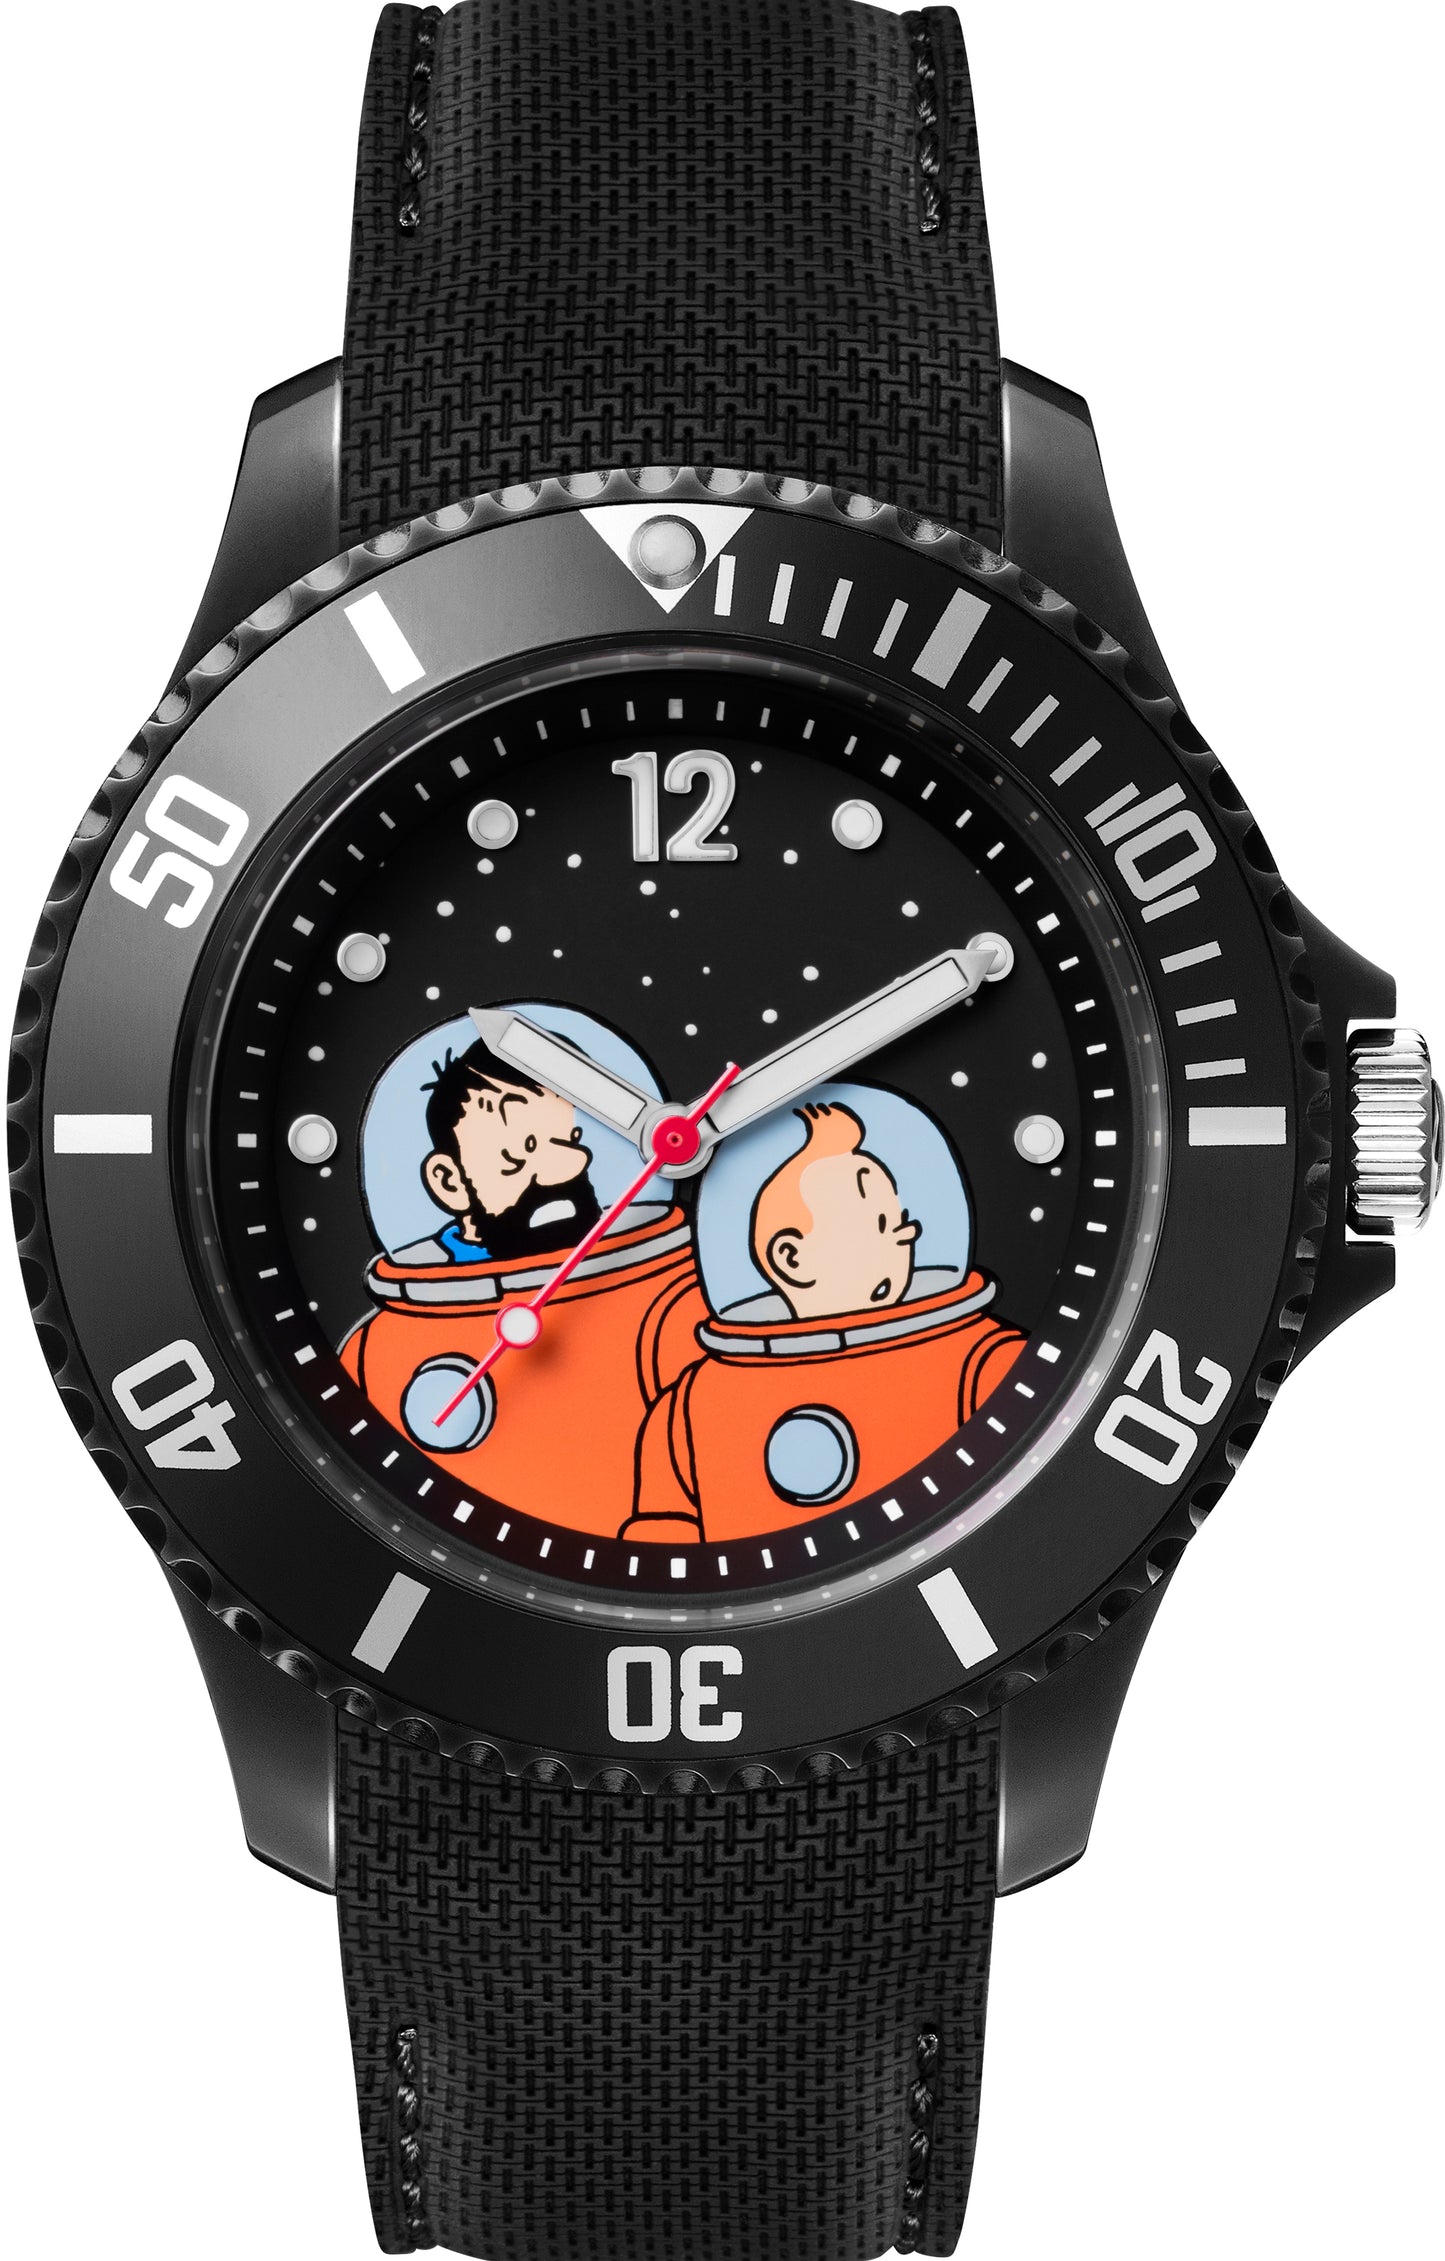 Tim und Struppi Armbanduhr Tim & Haddock Astronaut schwarz M